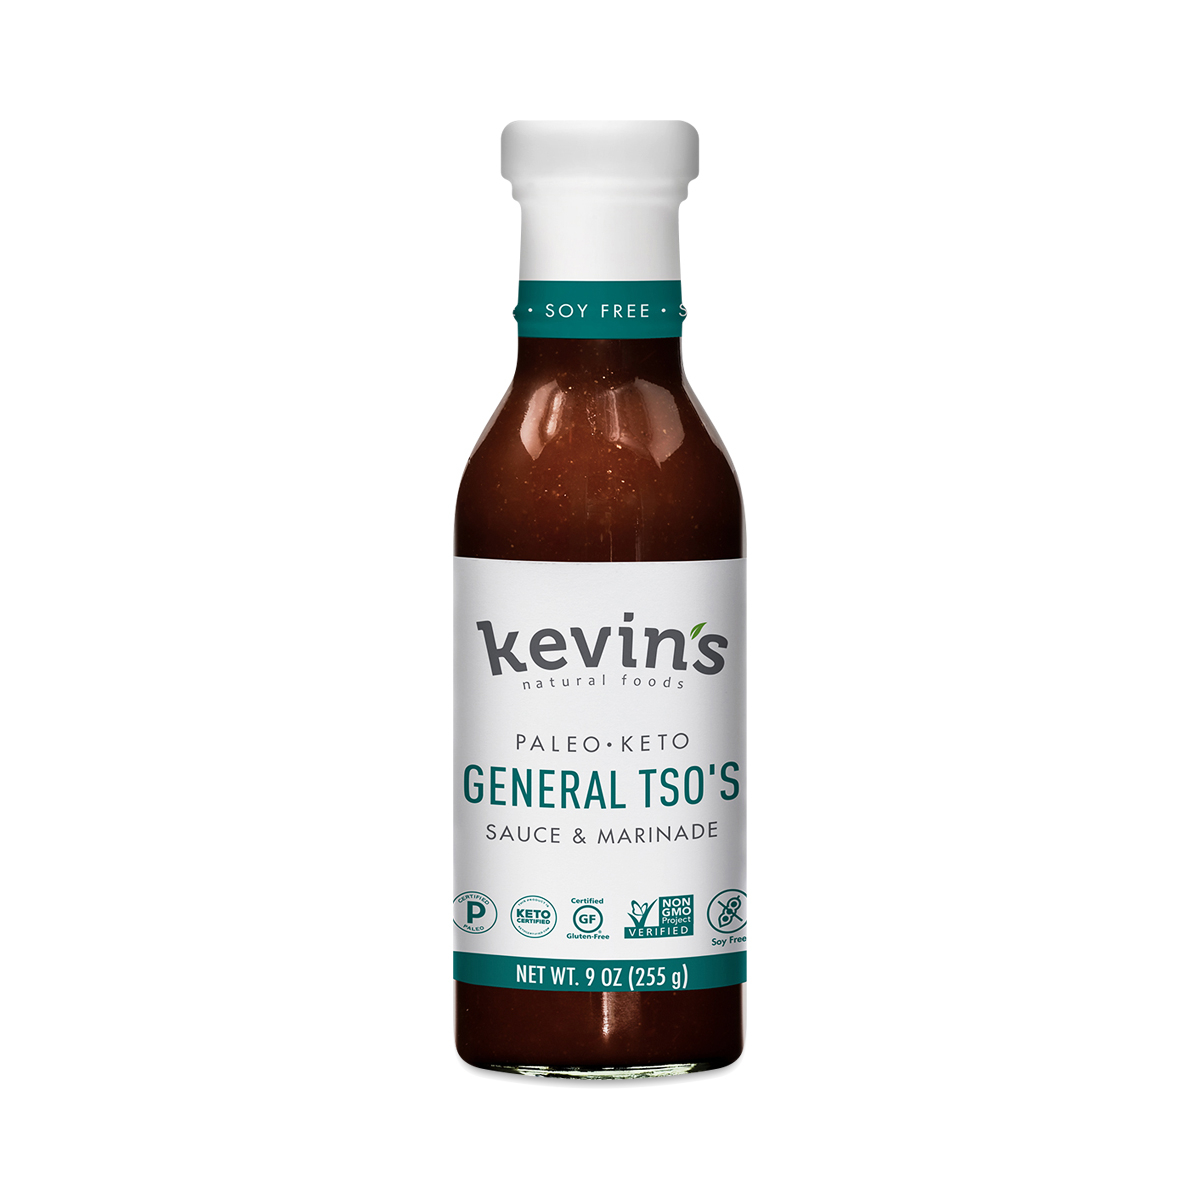 Kevin's General Tso Sauce & Marinade